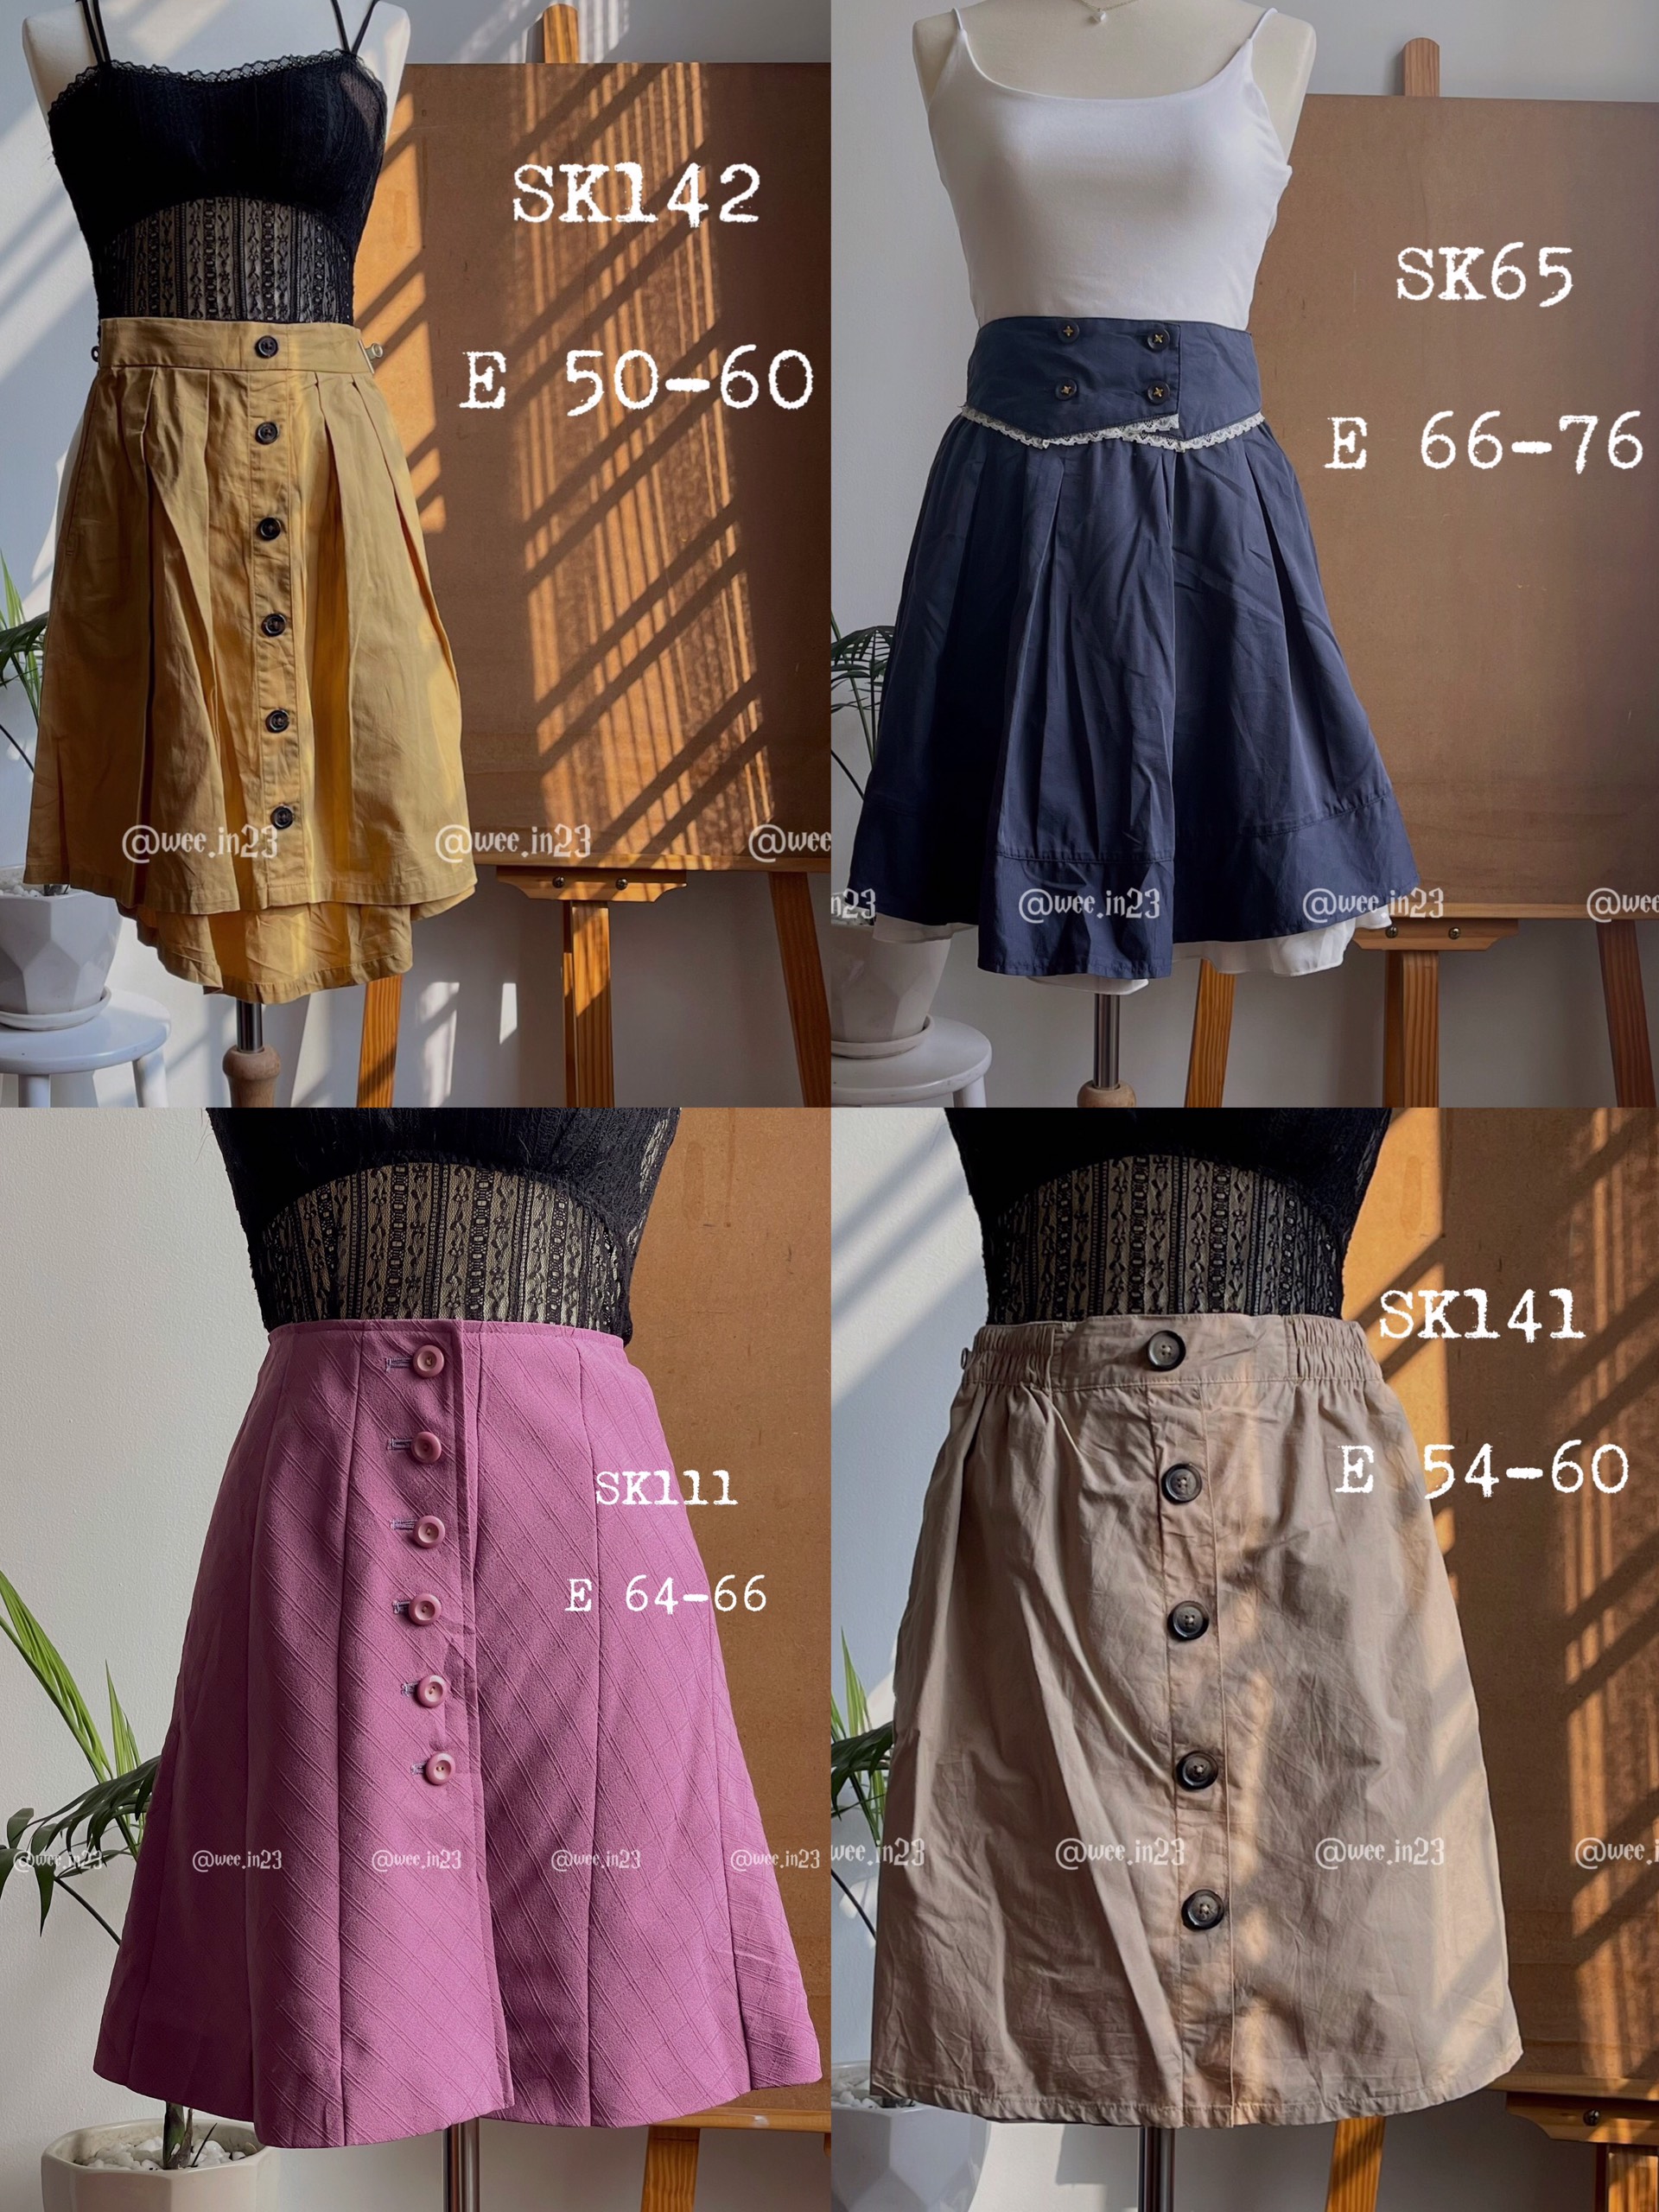 Đồng Giá Chân Váy Nhật Vintage Siêu Đẹp  2hand  Chân váy Si tuyển độ mới  cao  Chân váy giá rẻ  Lazadavn